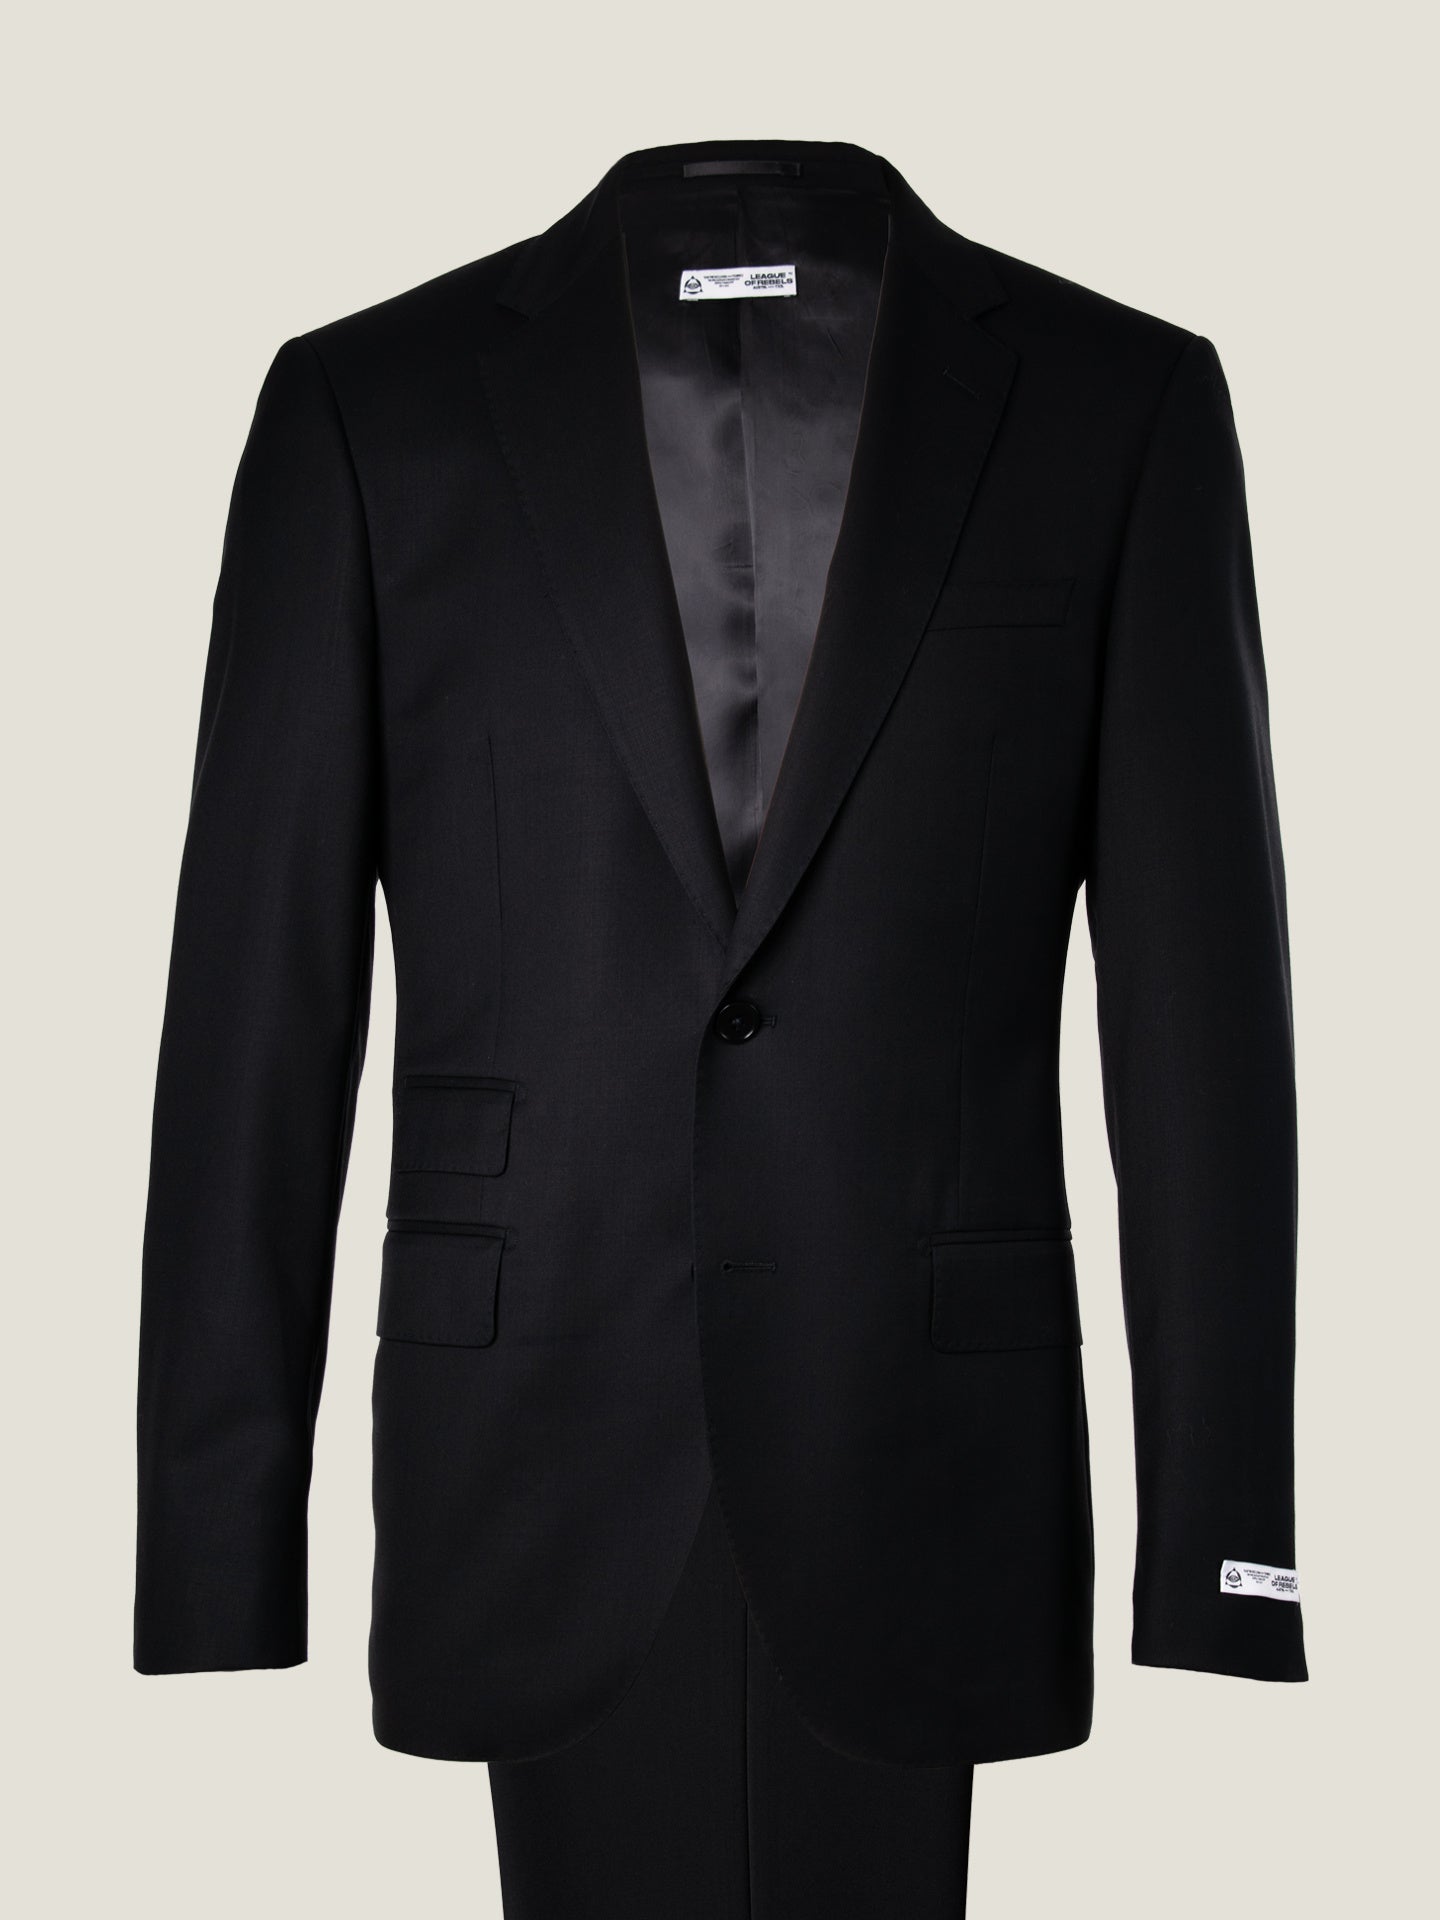 Essential Black Suit